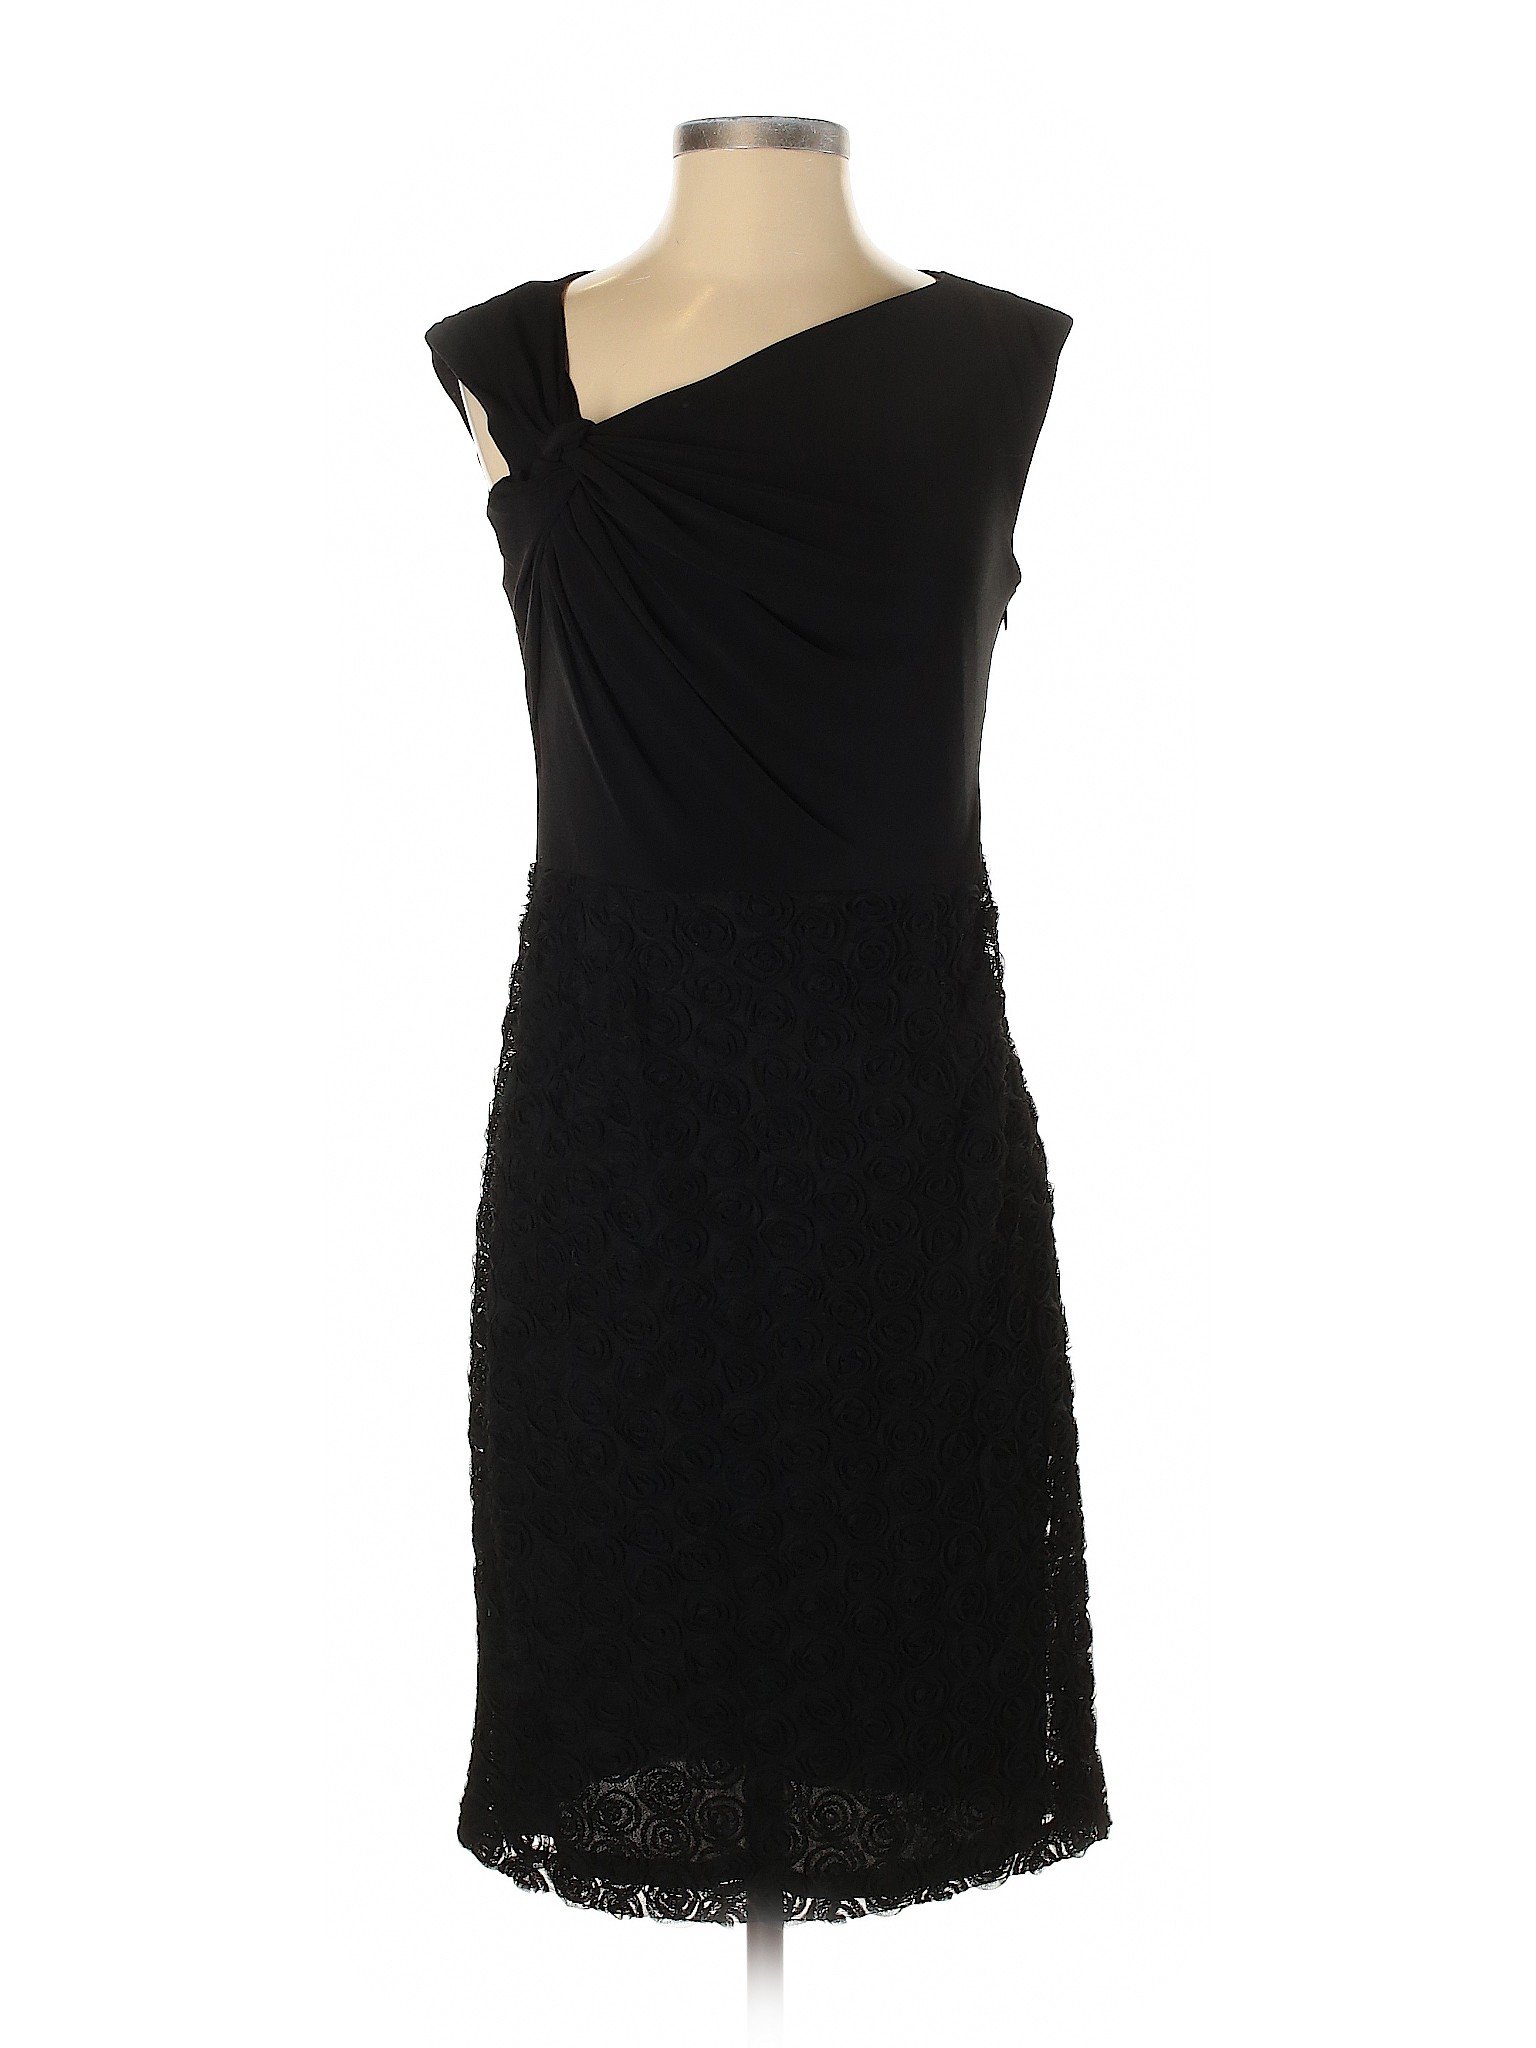 Saks Fifth Avenue Women Black Casual Dress 2 | eBay